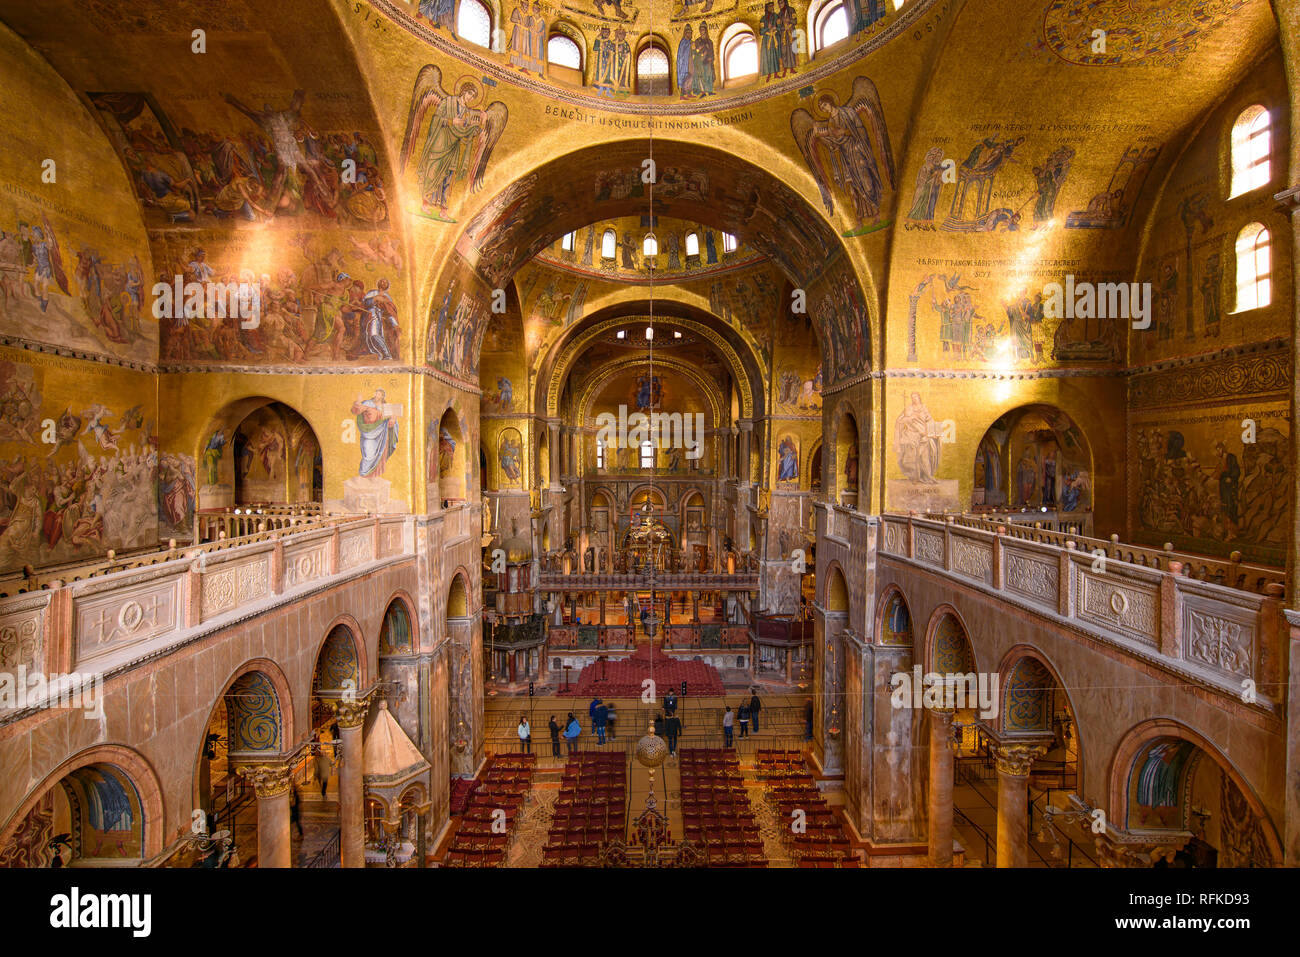 La décoration en mosaïque d'art de l'intérieur de la Basilique St Marc, l'église cathédrale de Venise, Italie Banque D'Images